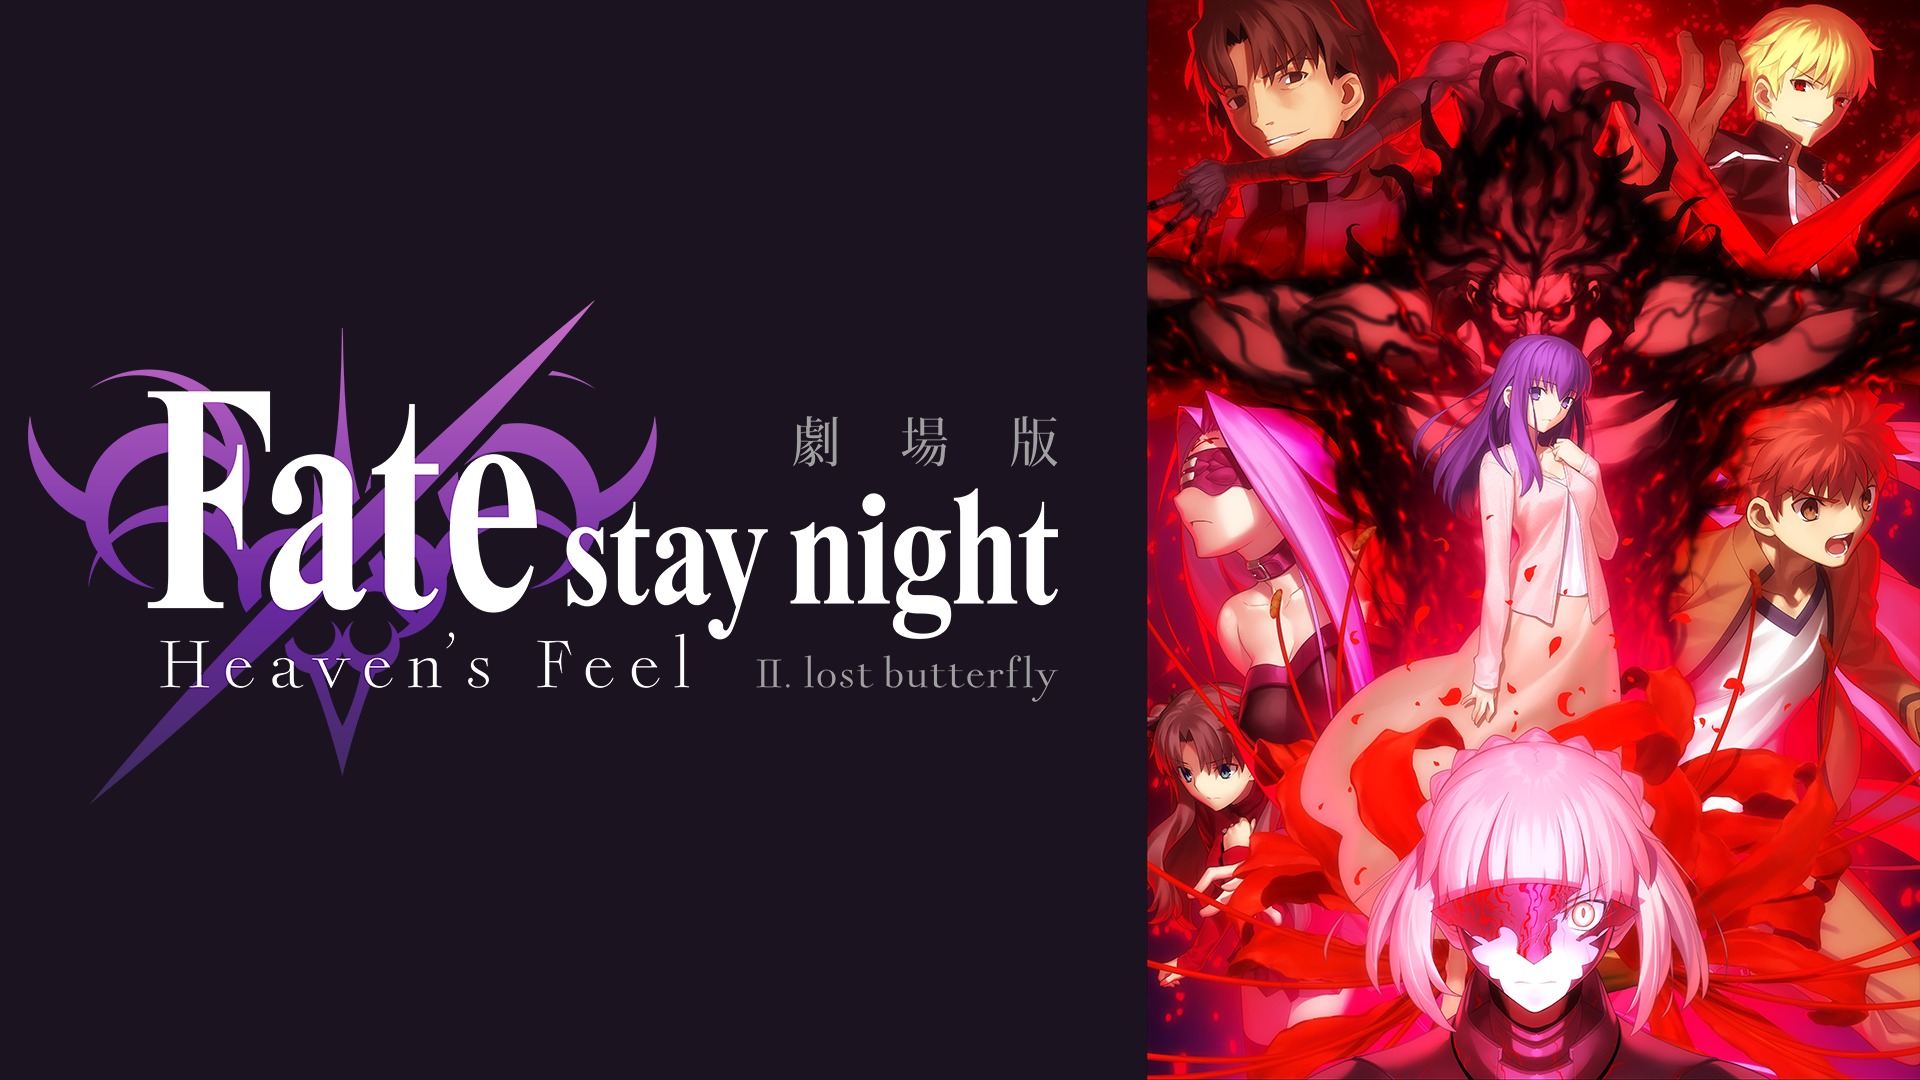 劇場版 Fate/stay night Heaven’s Feel II. lost butterflyのアニメ無料動画をフル視聴する方法と配信サービス一覧まとめ